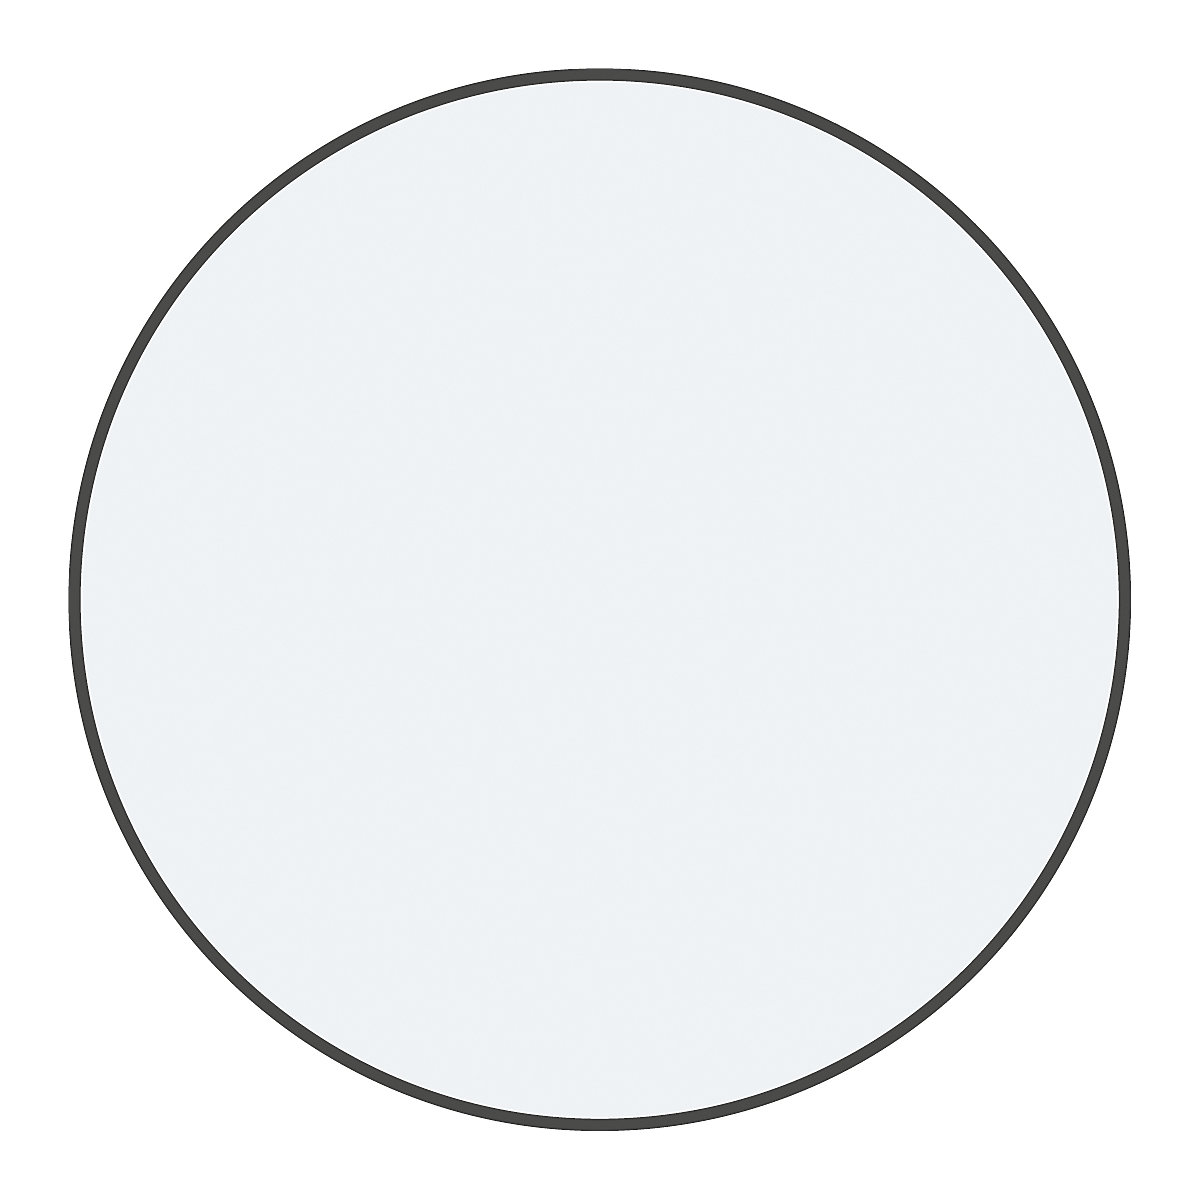 Podlahové značení z PVC, tvar kruhu, bal.j. 100 ks, bílá